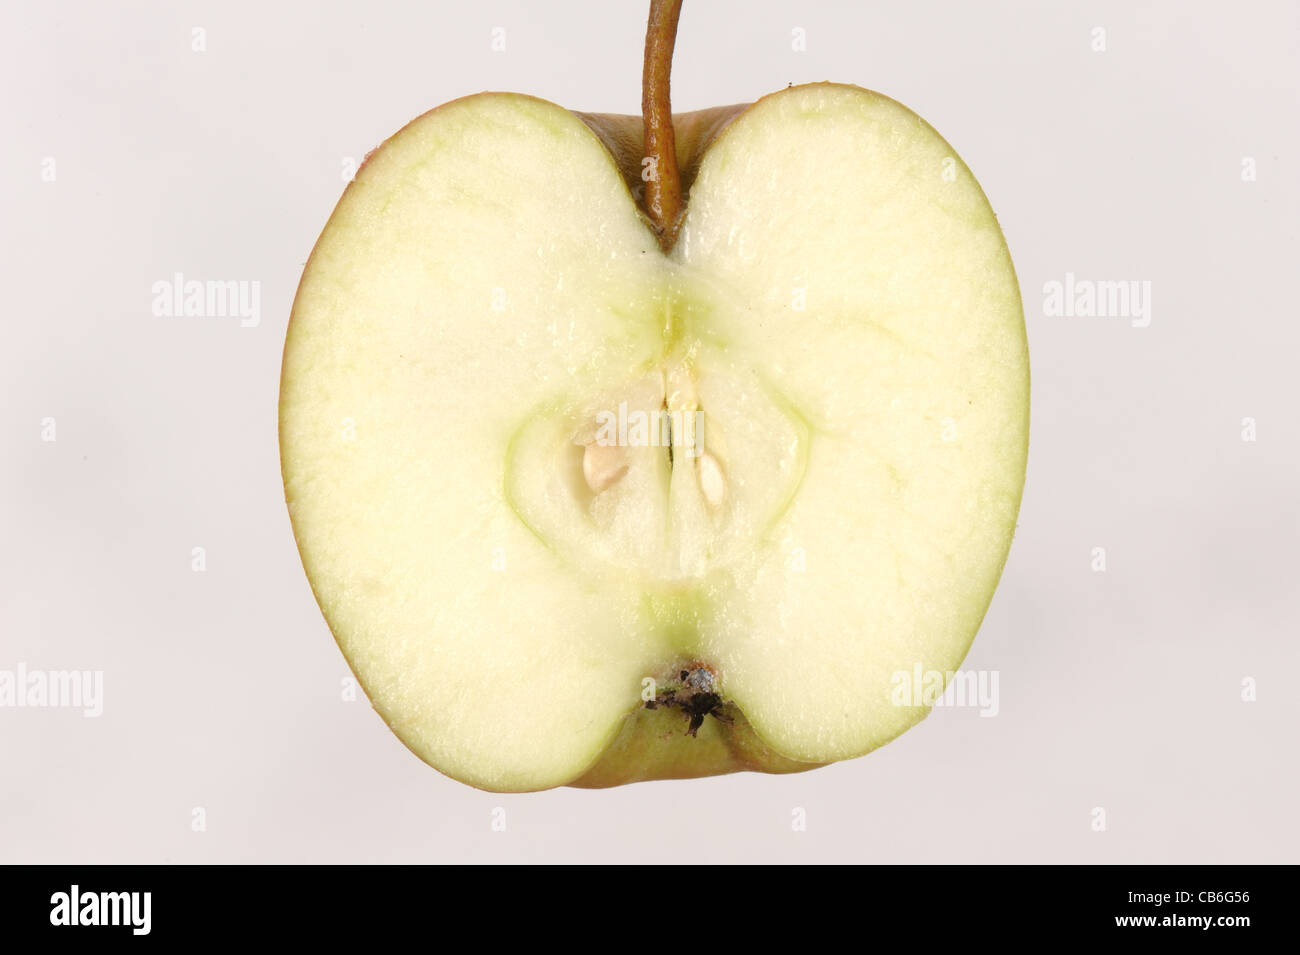 Bramley apple fruit longitudinal section showing seeds Stock Photo